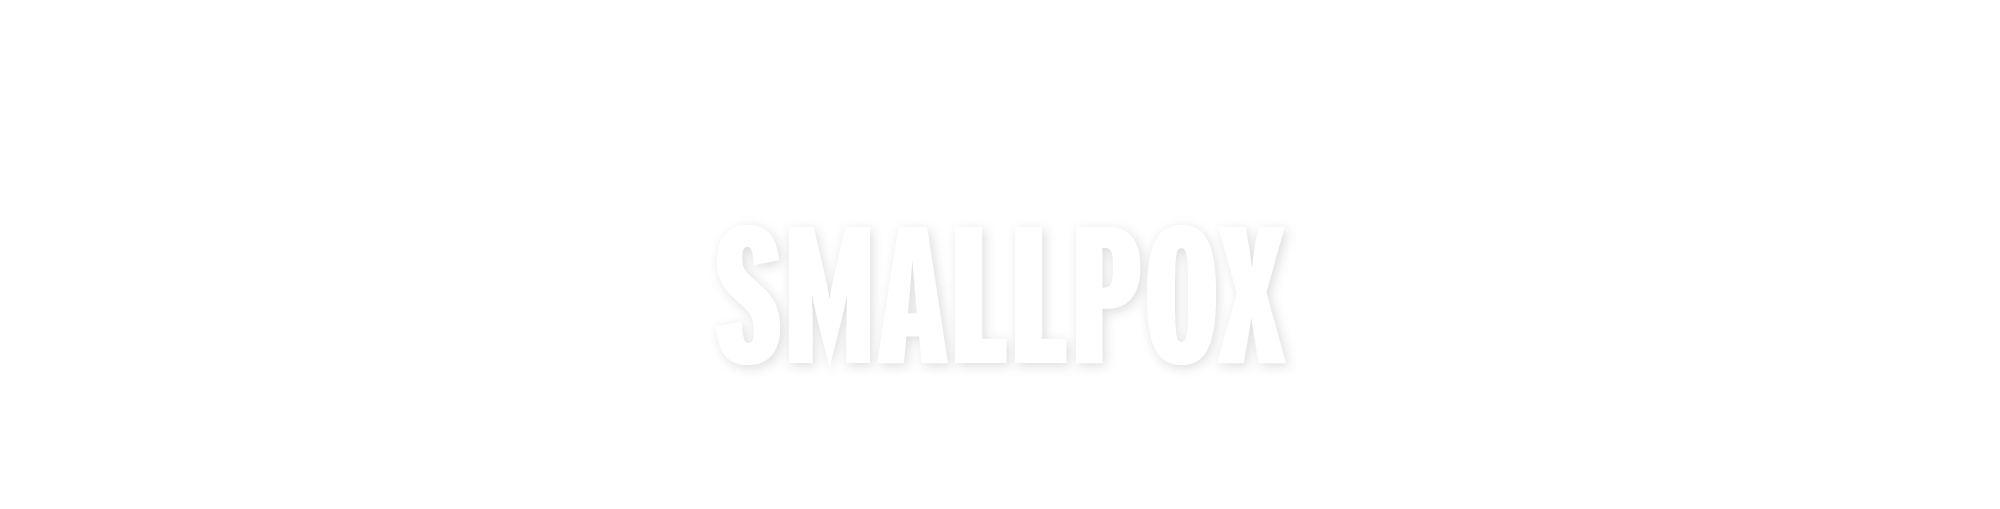 CZ_05_title_smallpox